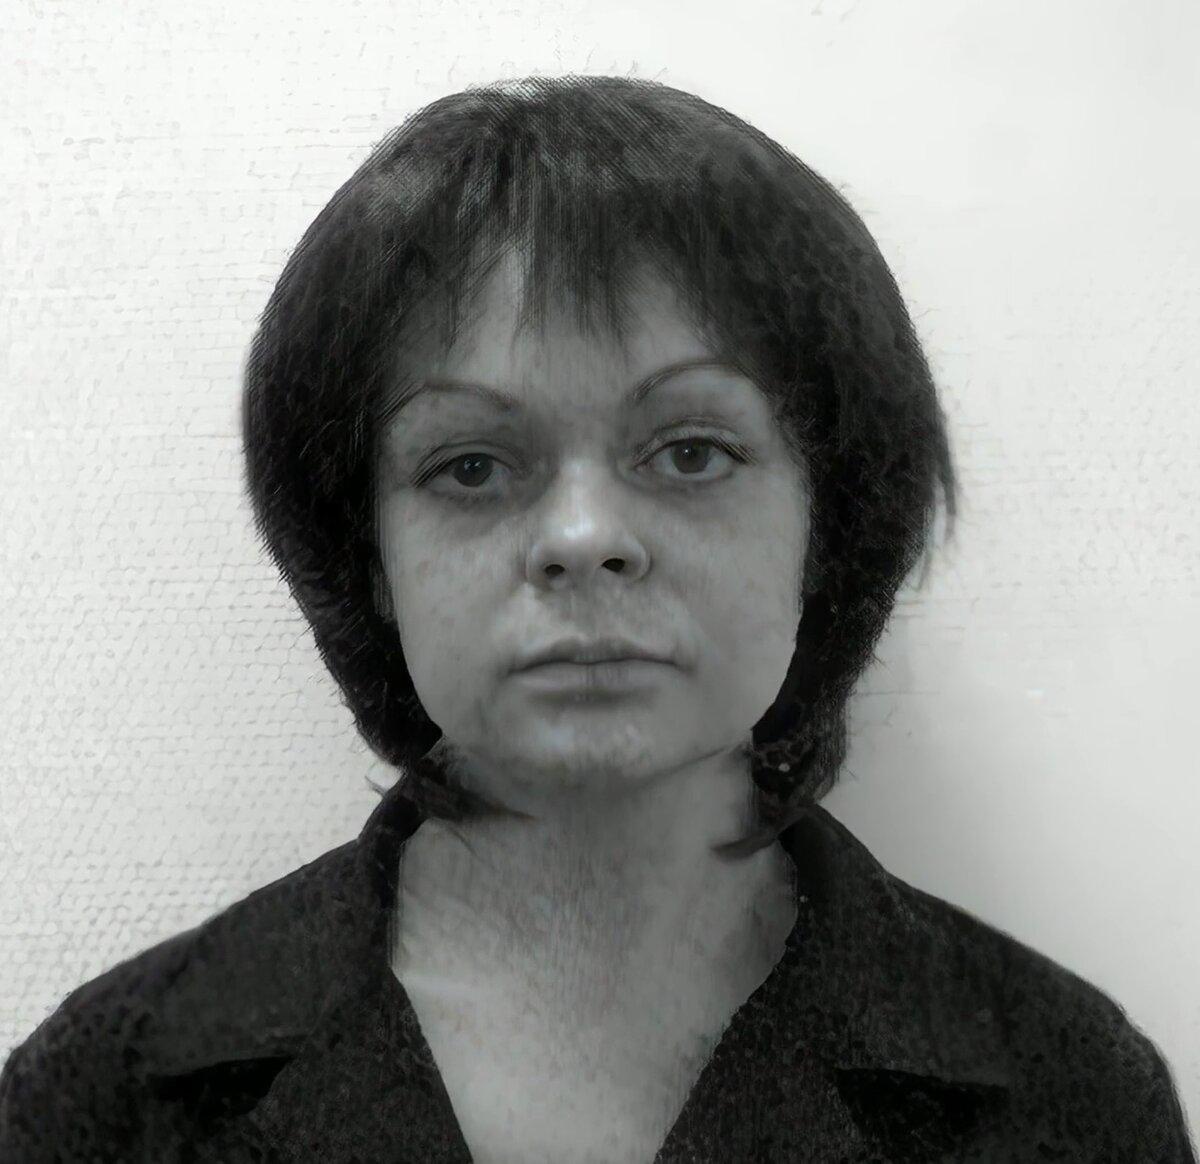 Людмила Колчина, жена Игоря. Фото из интернета.